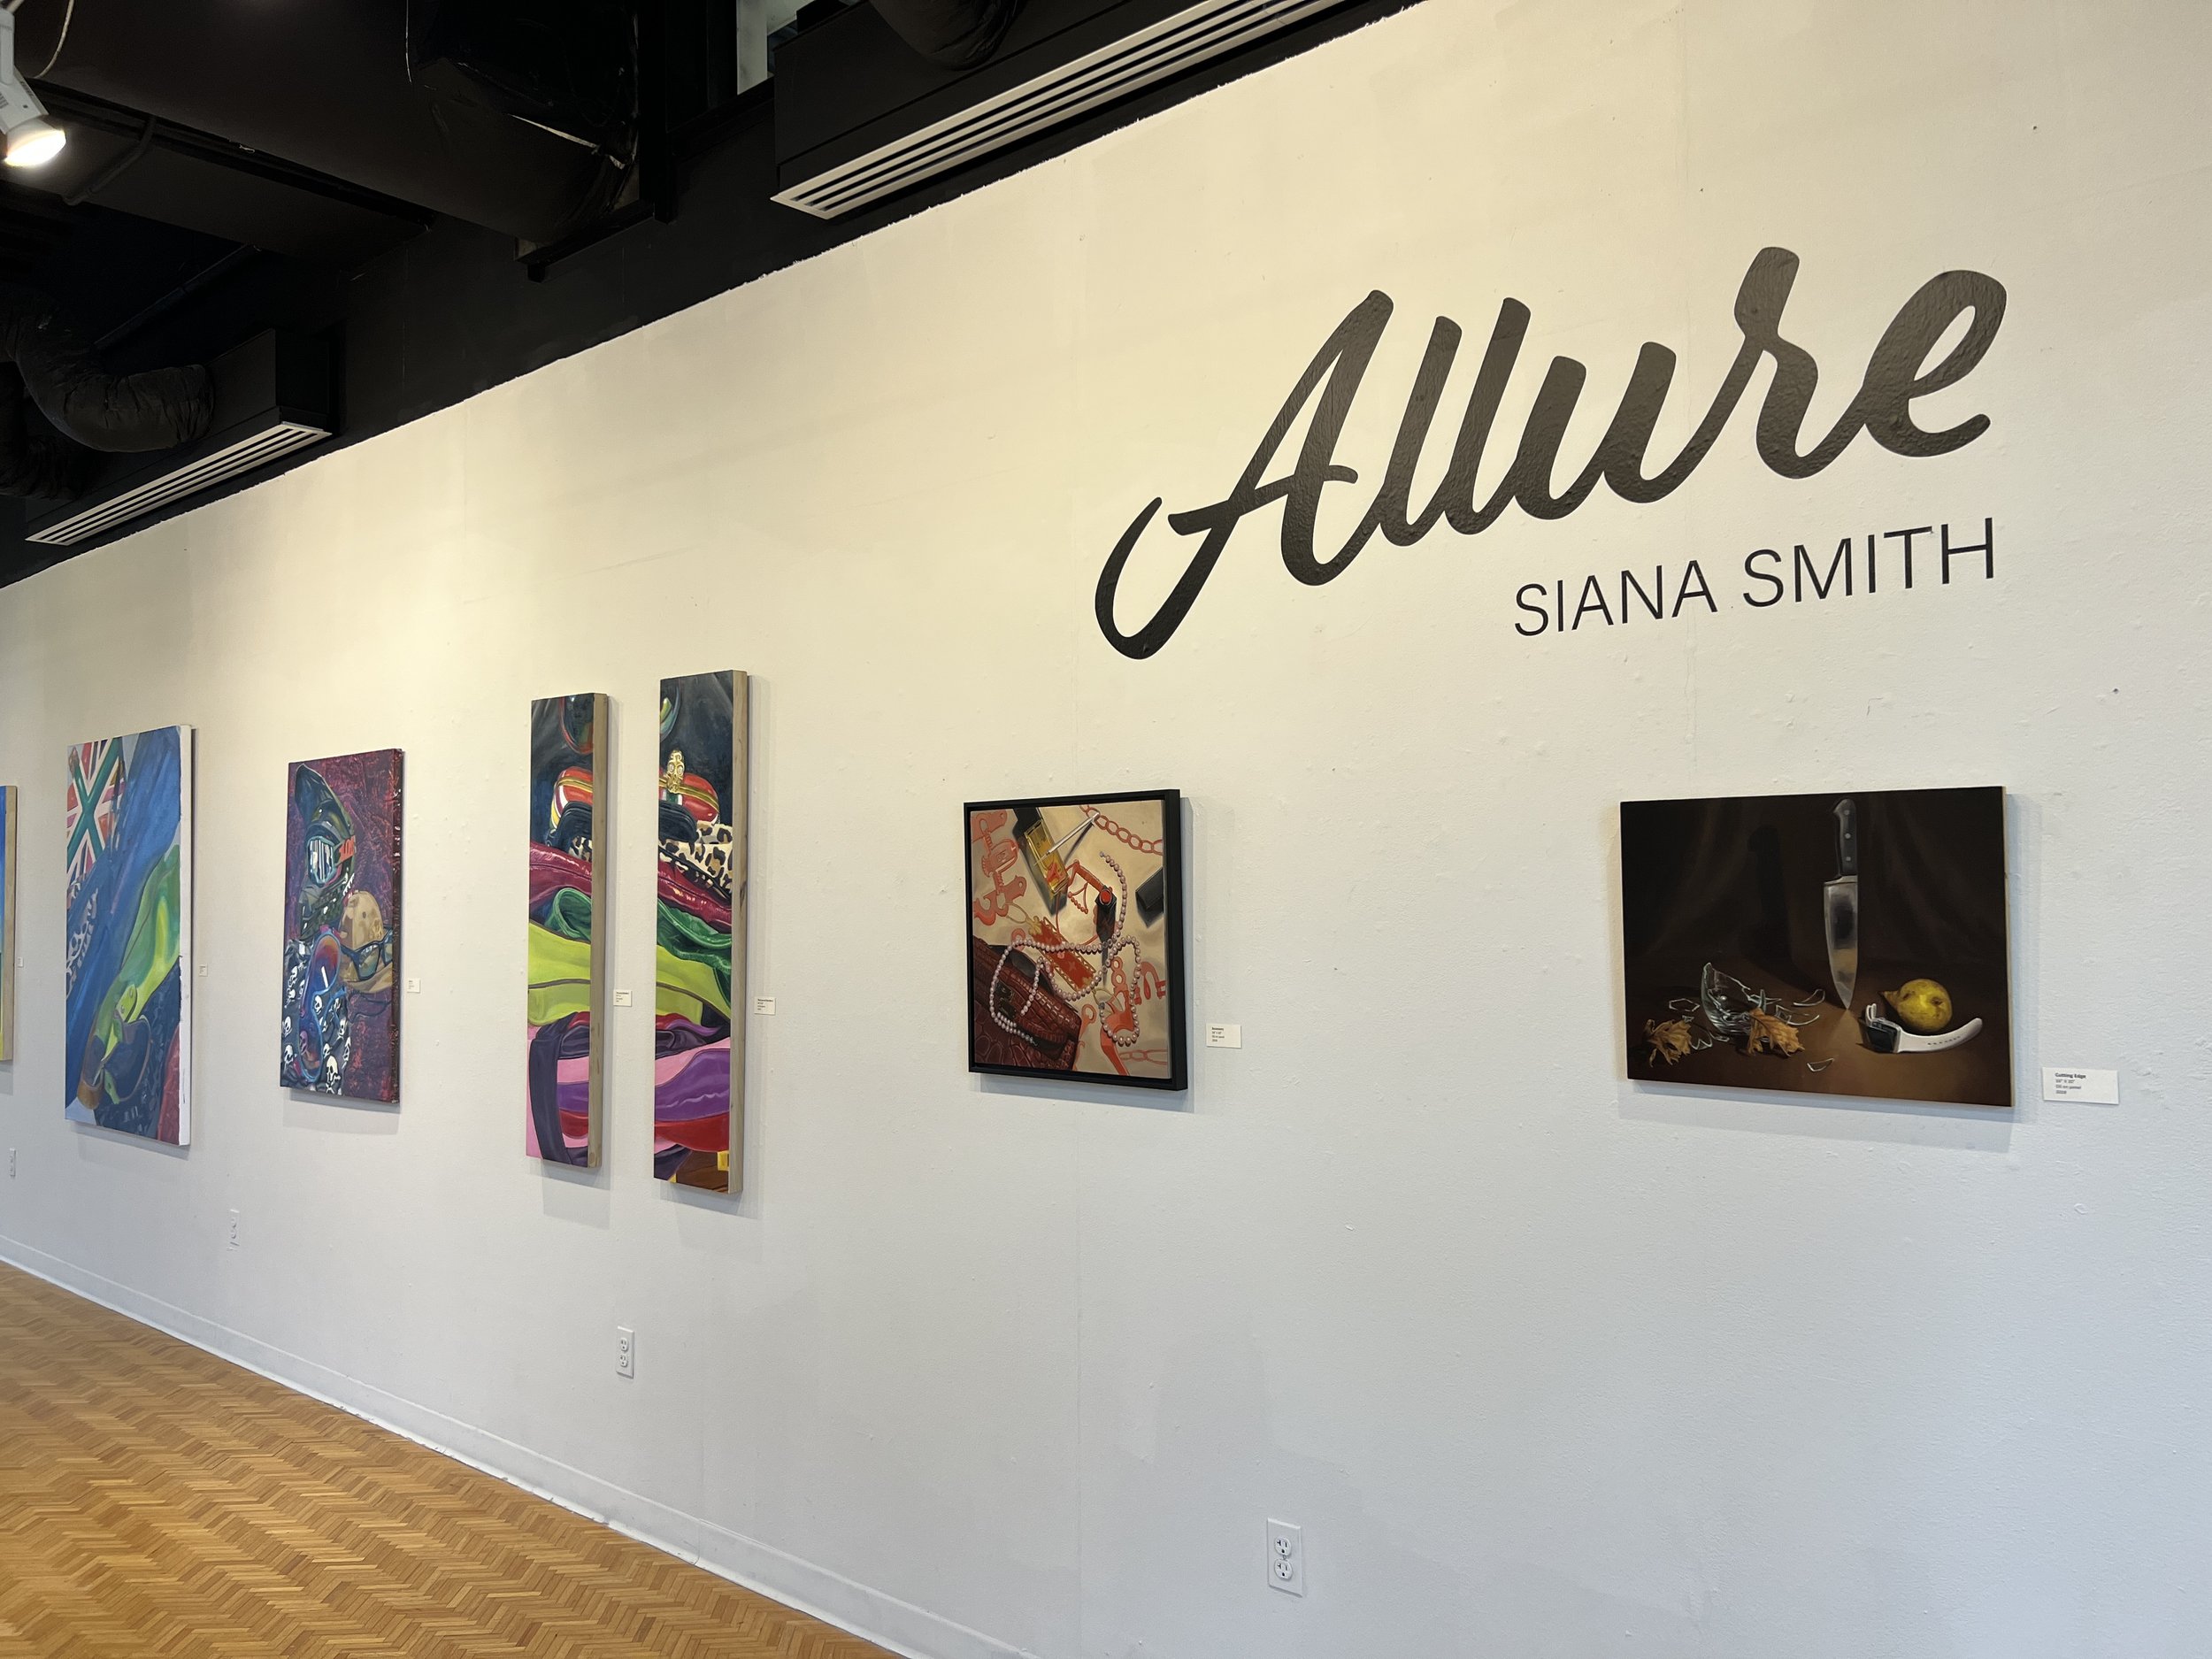 Solo Exhibition "Allure", Southern Arkansas Univ.